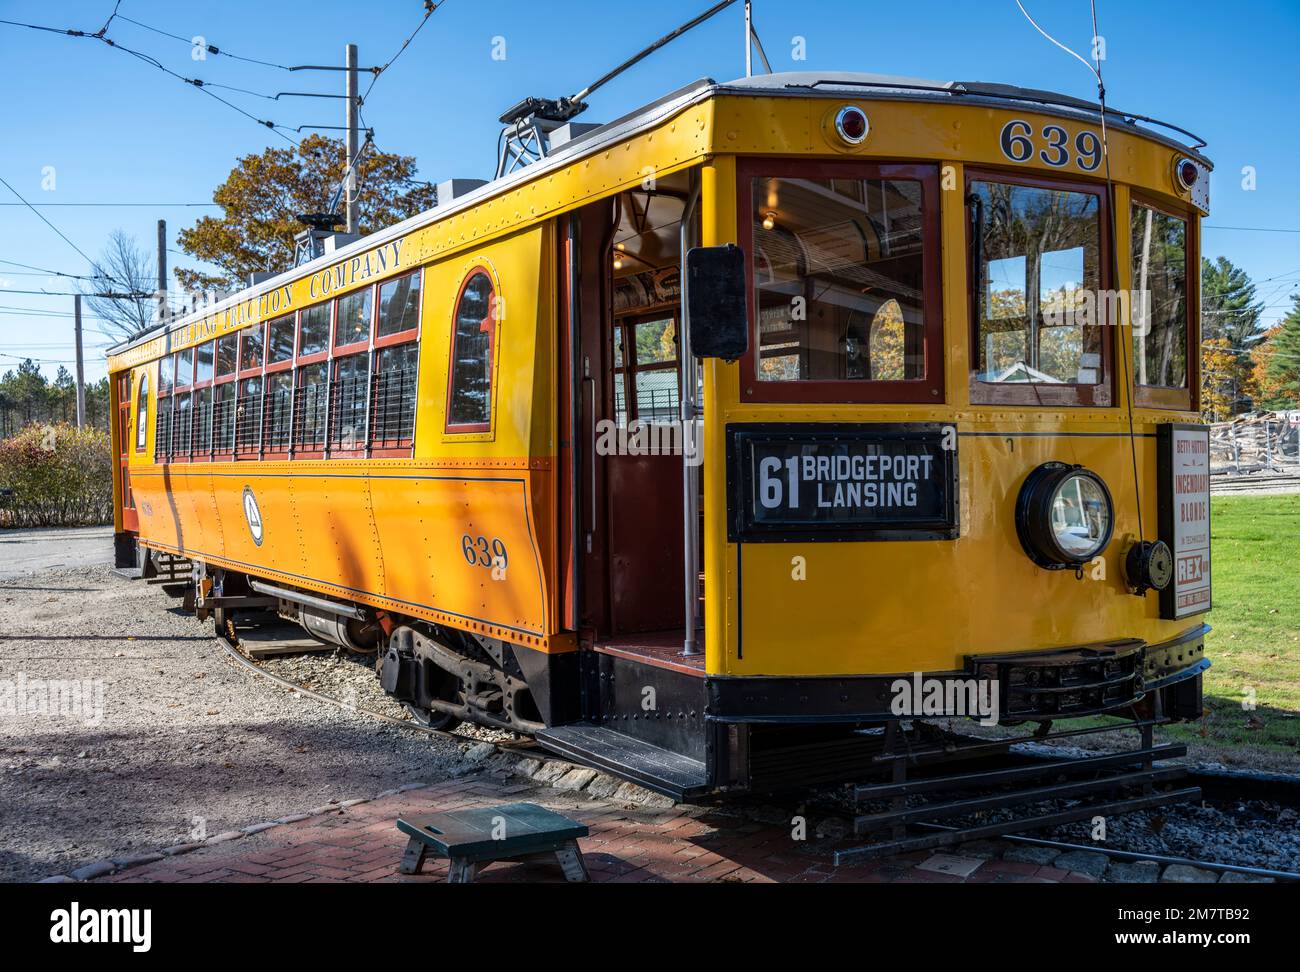 Der Außenblick auf die Straßenbahn Nr. 639 führte Besucher zu einer Fahrt im Seashore Trolley Museum Stockfoto